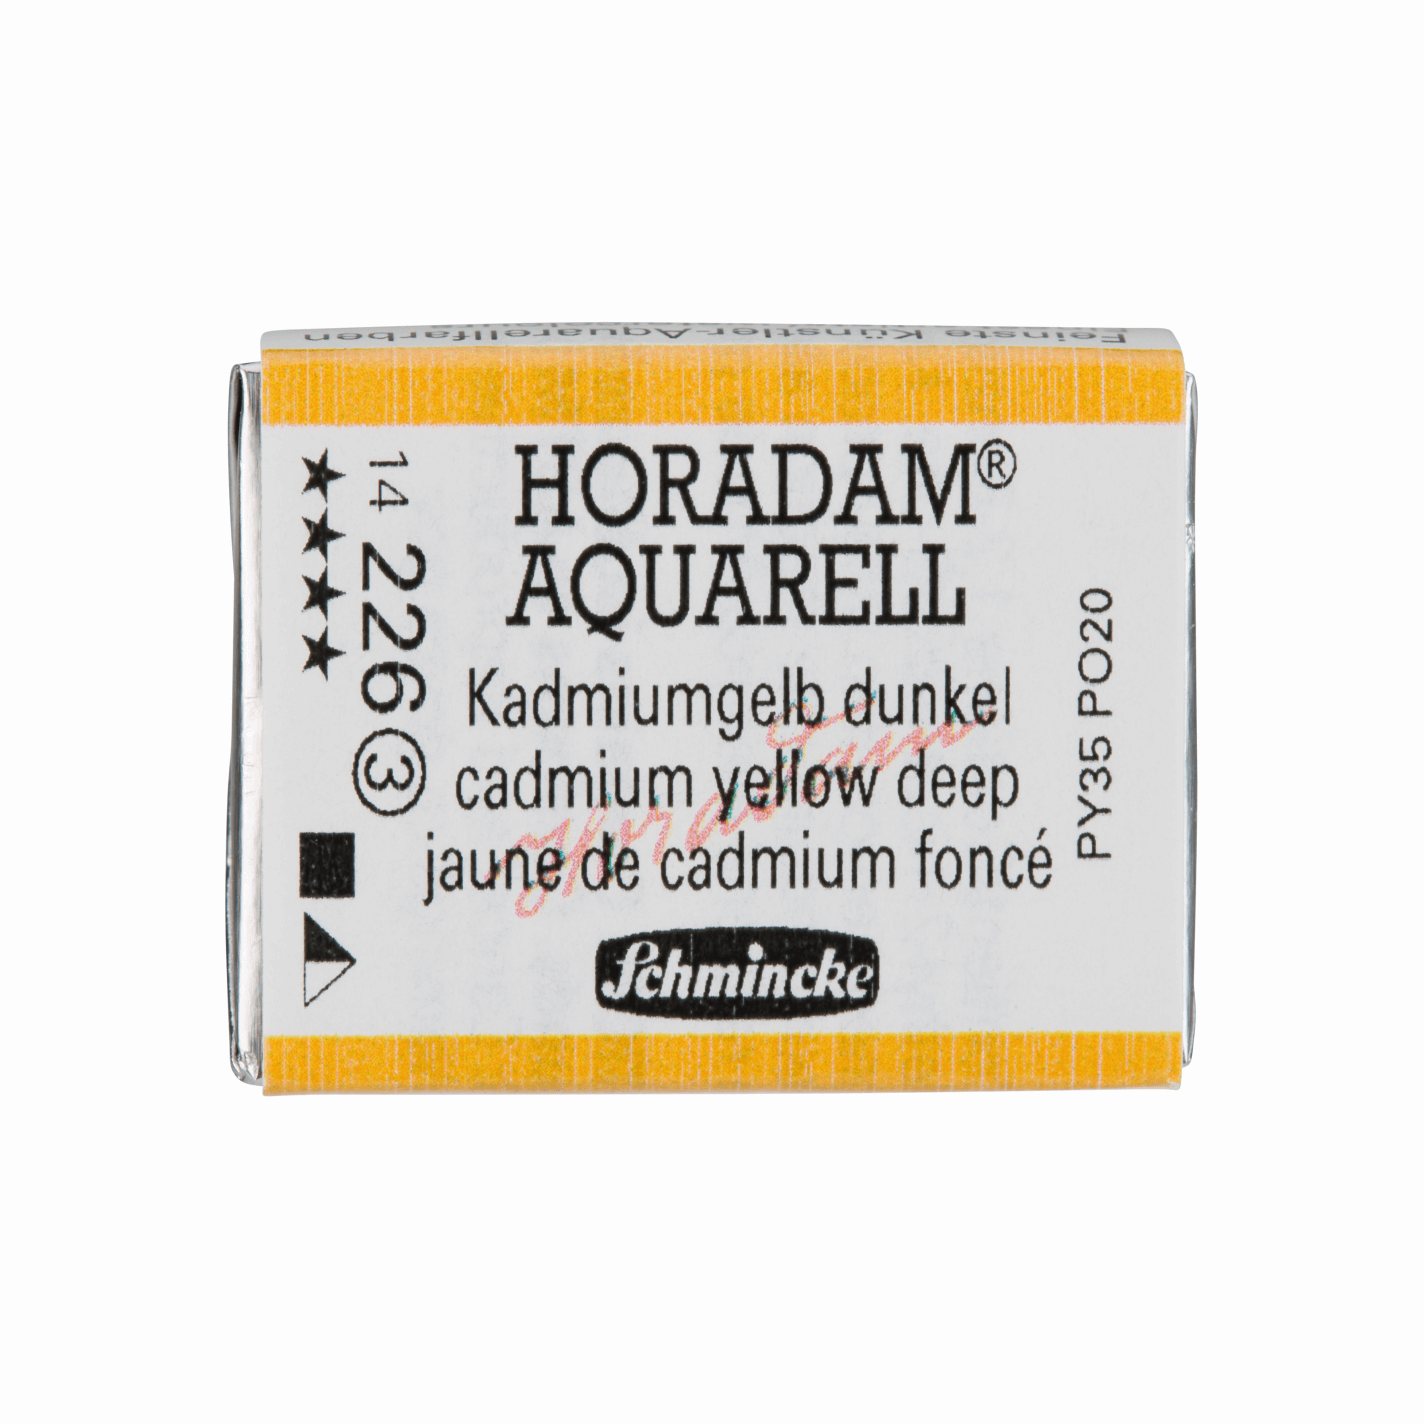 Schmincke Horadam Aquarell pans 1/1 pan Cadmium Yellow Deep